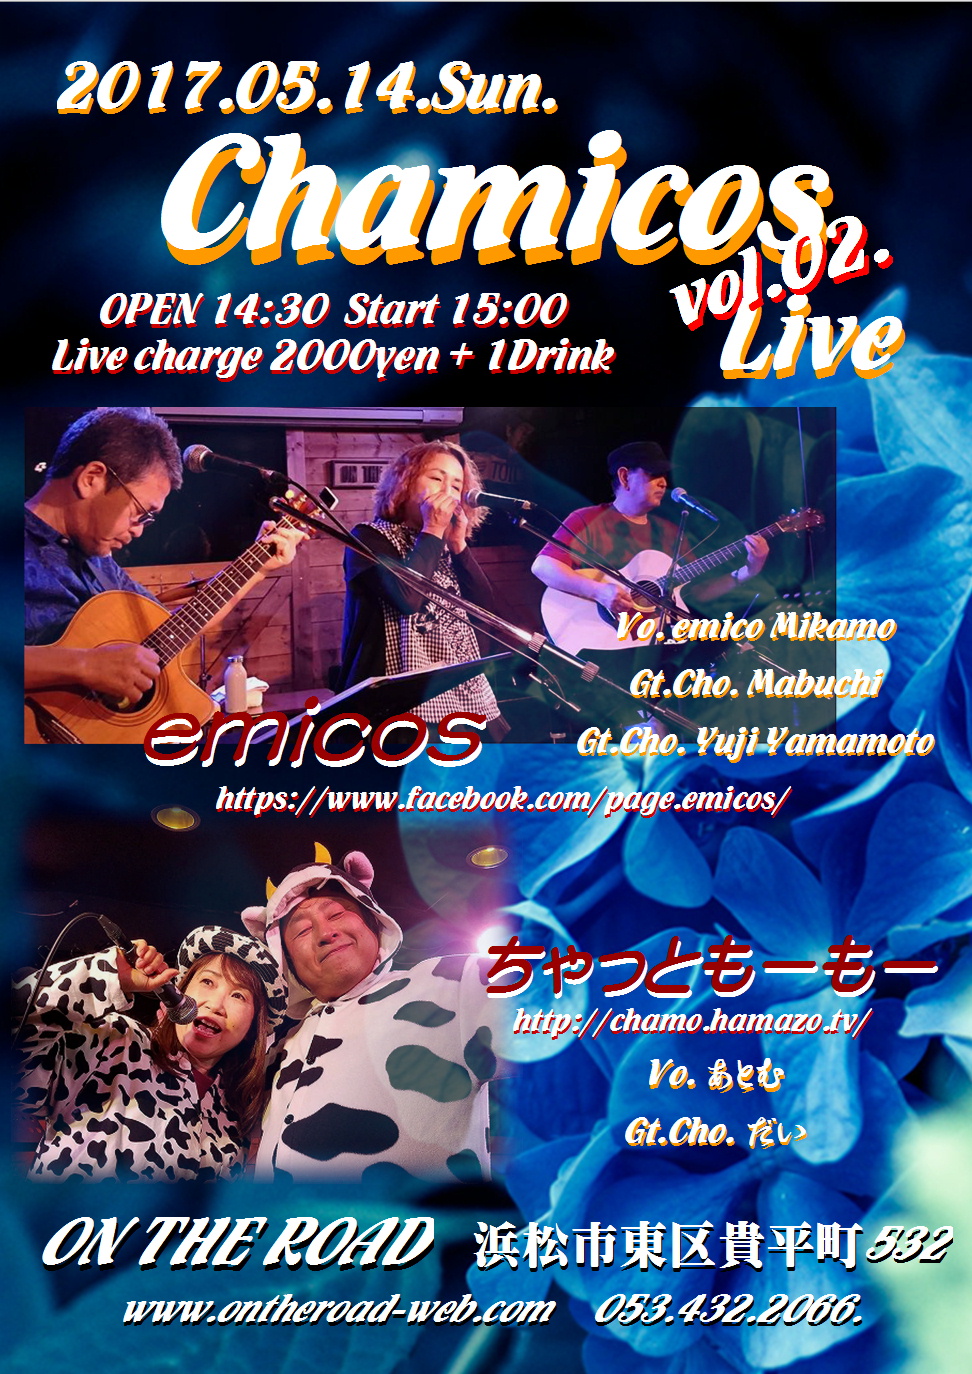 Chamicos Live vol.02.